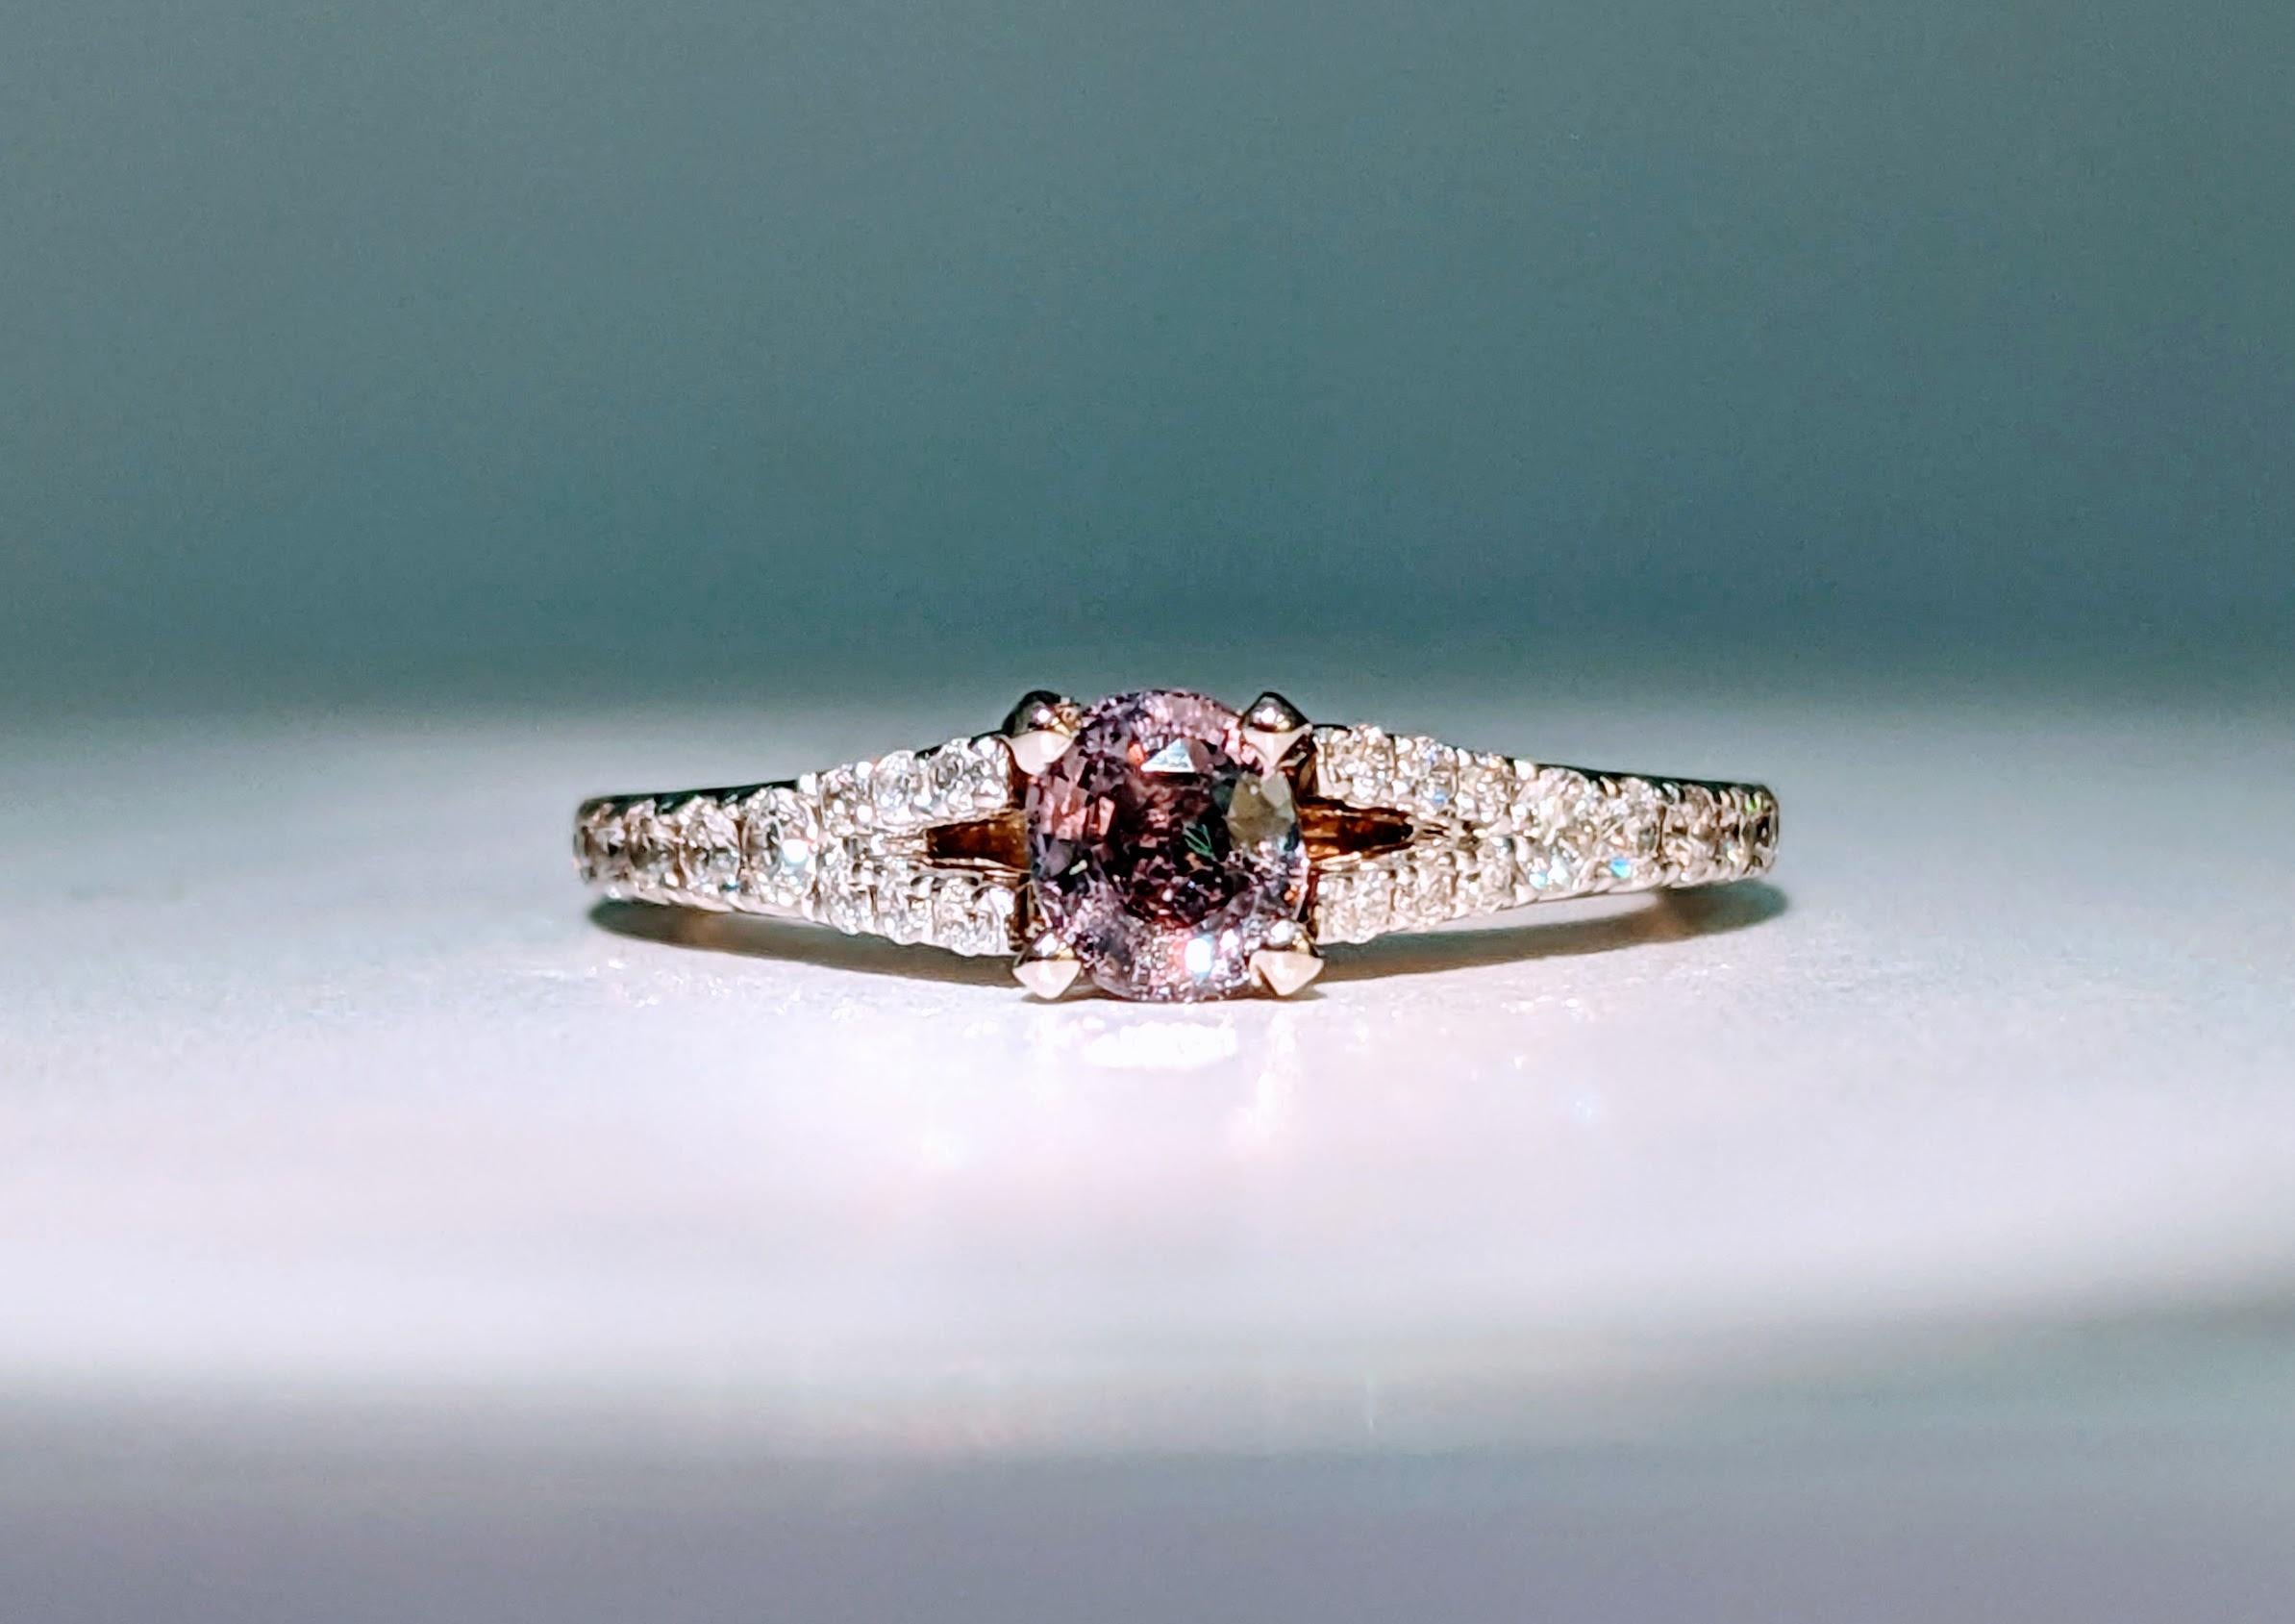 59 Karat Alexandrit & Diamant Platin/Gelbgold Ring

Unser exquisiter Platinring ist ein wahres Zeugnis für Luxus und Eleganz. Dieses wunderschöne, sorgfältig aus Platin gefertigte Schmuckstück besticht durch eine schillernde Anordnung von Diamanten